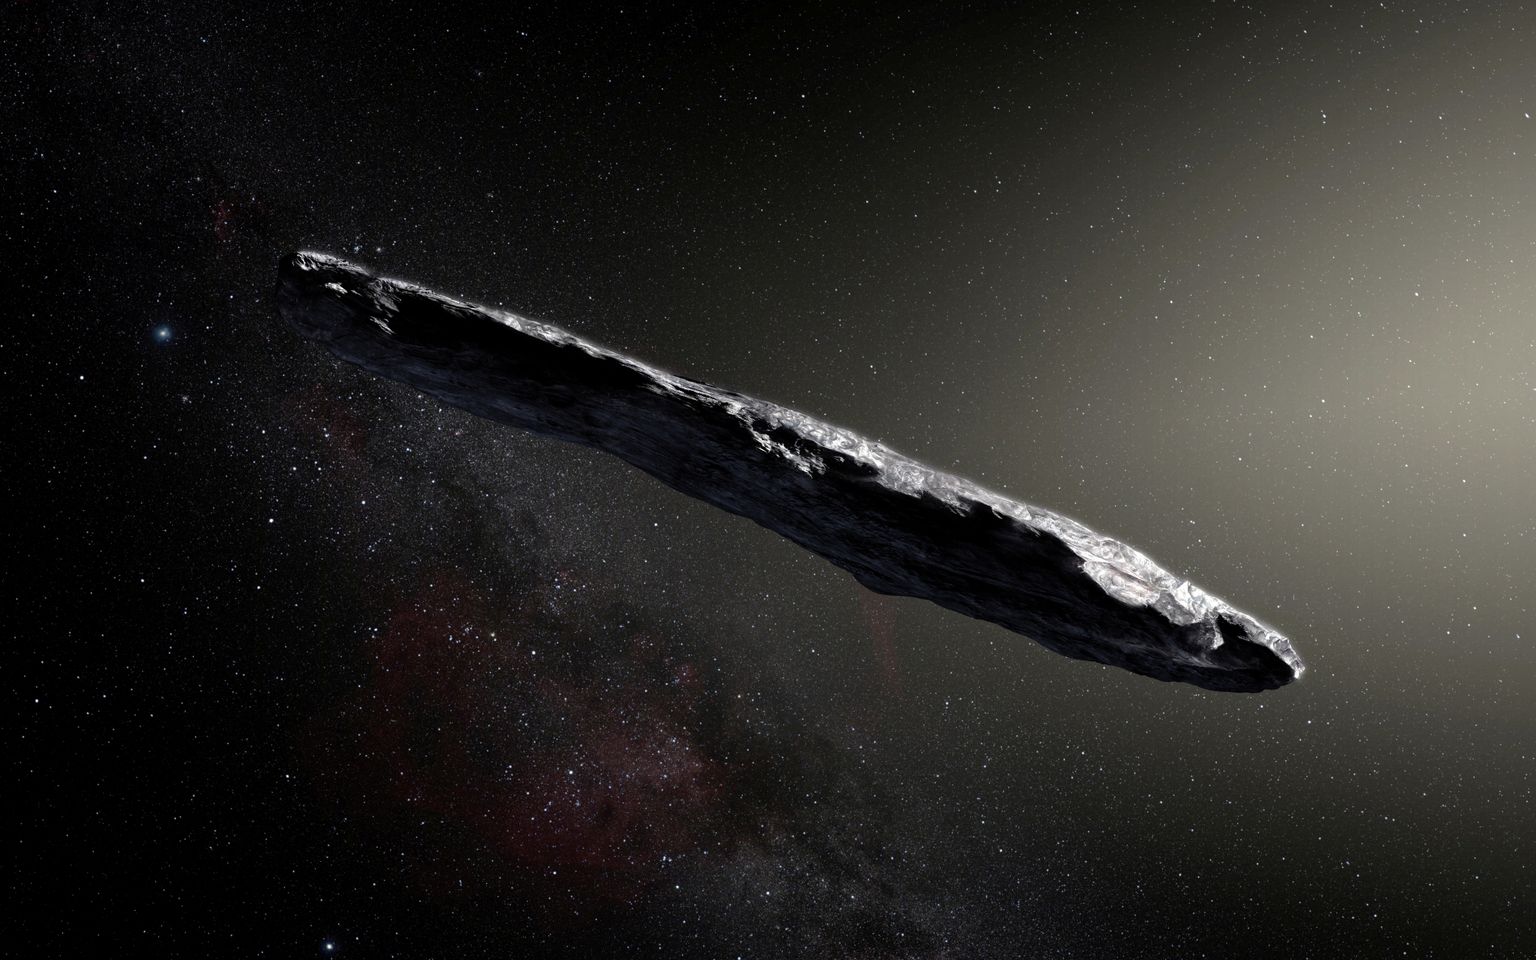 Euroopa lõunaobservatooriumi avaldatud arvutijoonistus Oumuamuast